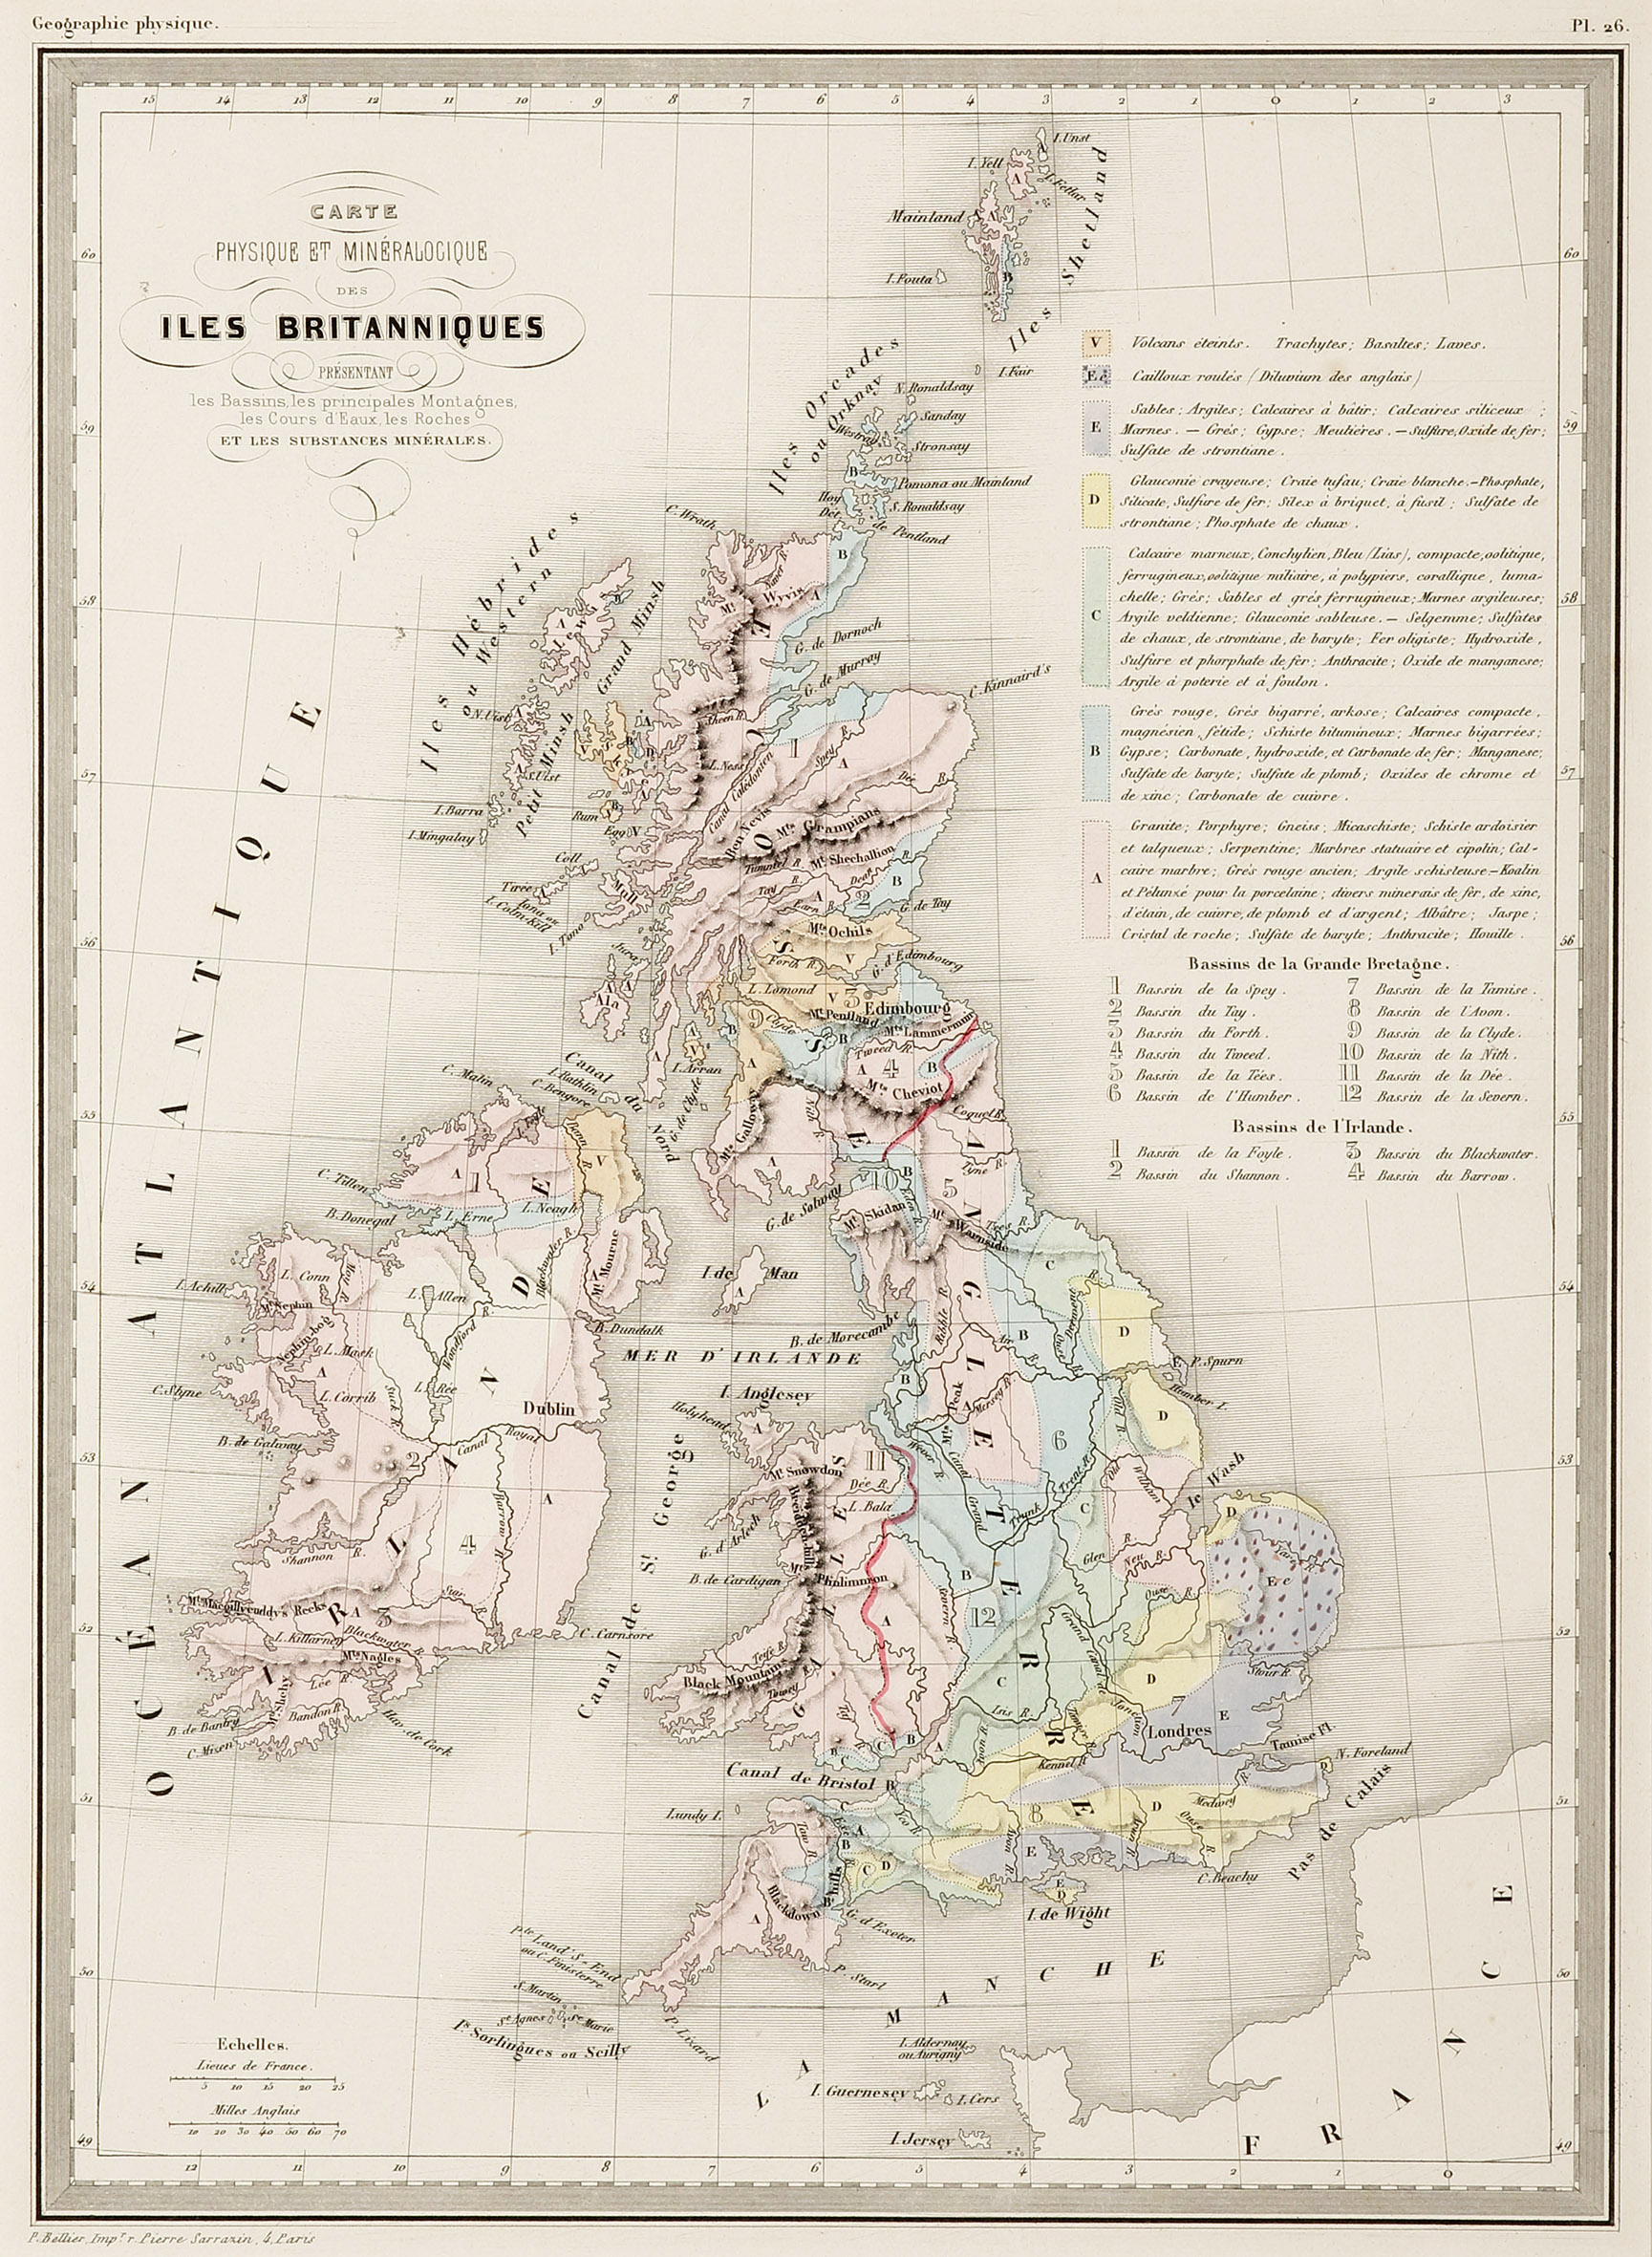 Carte Physique et Mineralogique des Iles Britanniques - Antique Print from 1850